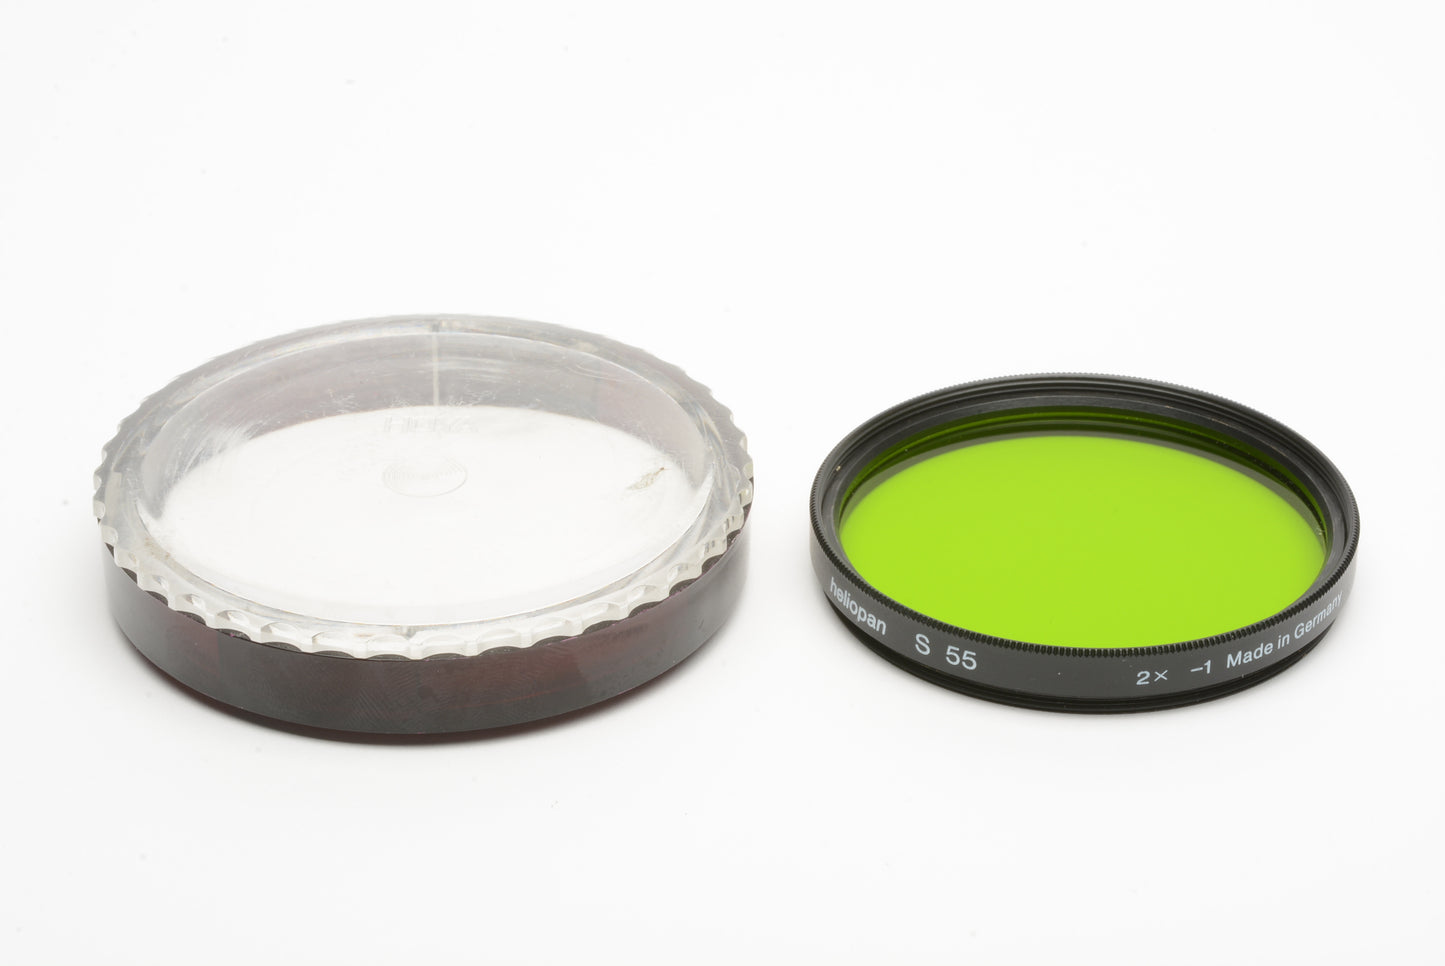 Heliopan S55 Light green B+W contrast filter 2X -1 in jewel case